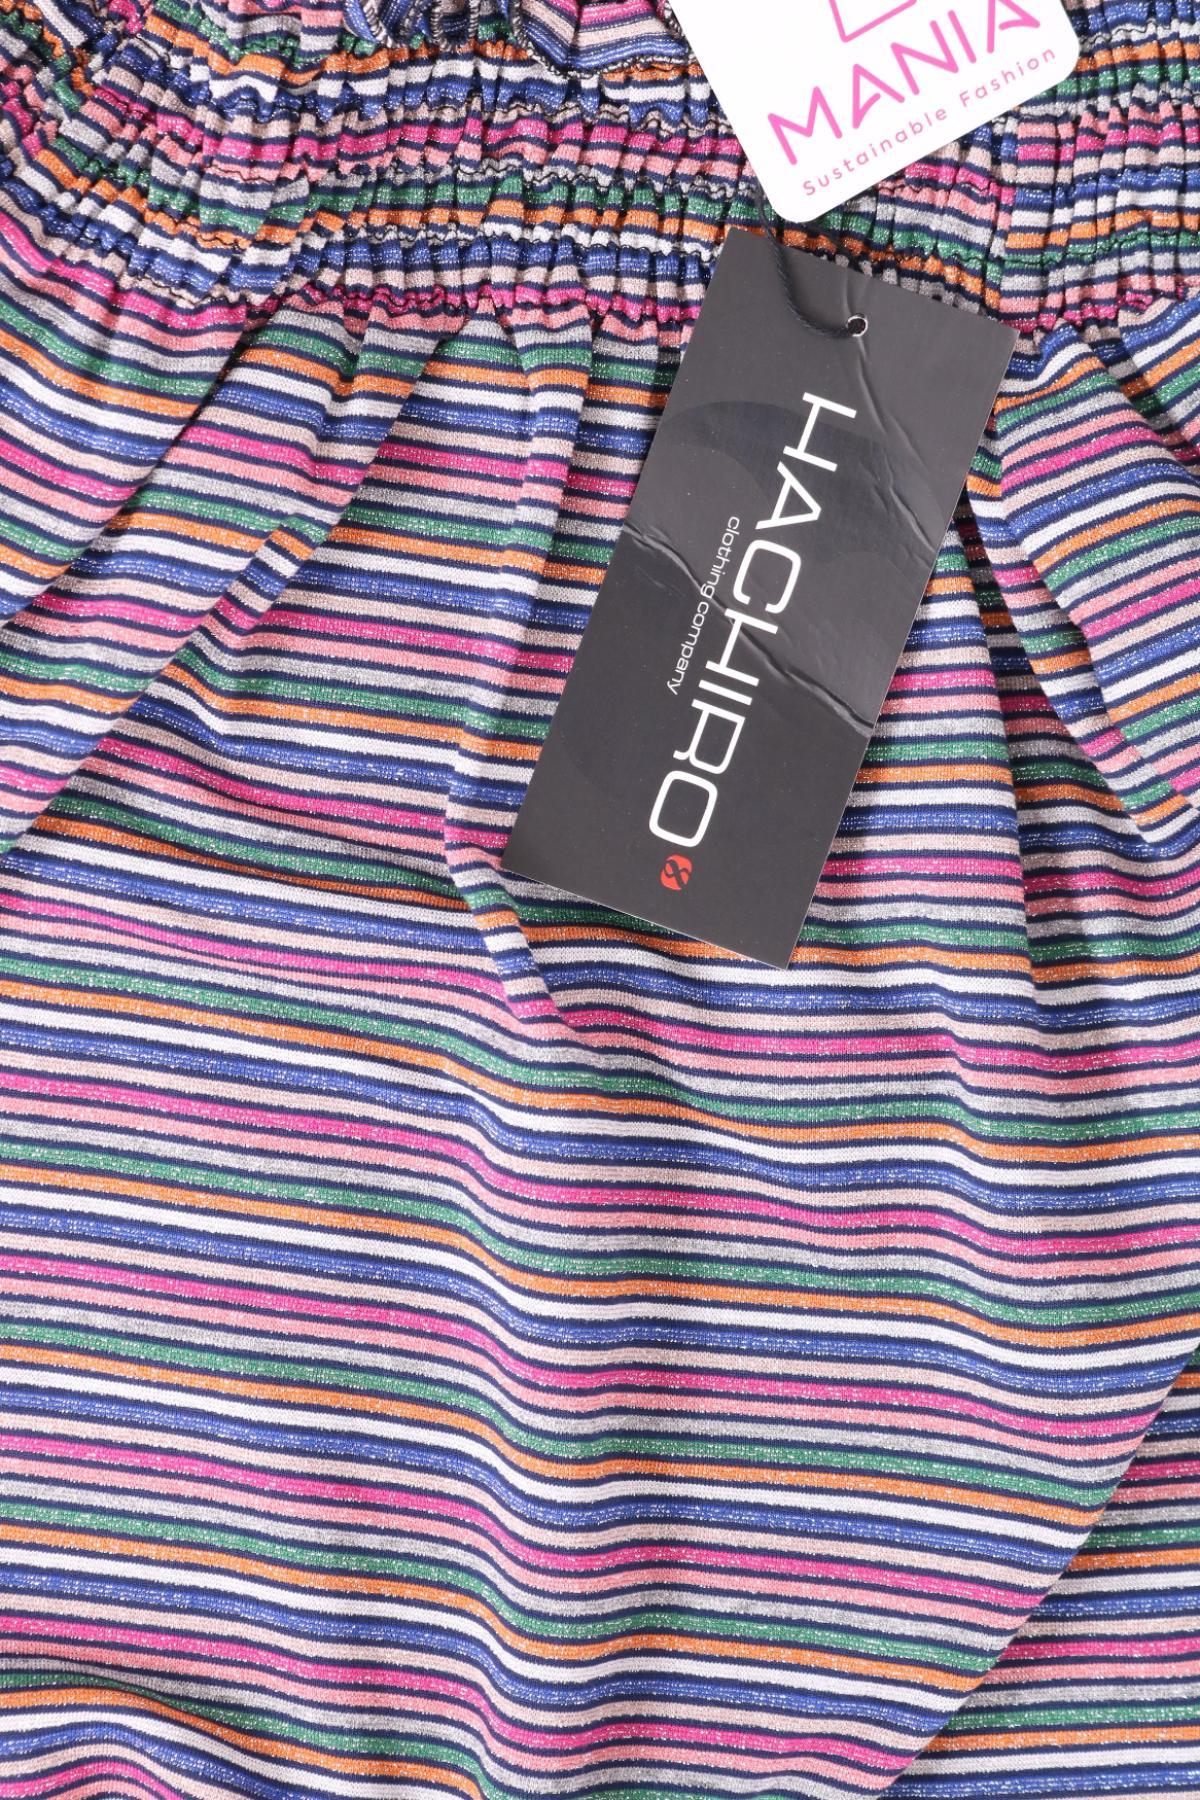 Блузи от Тениски HACHIRO3